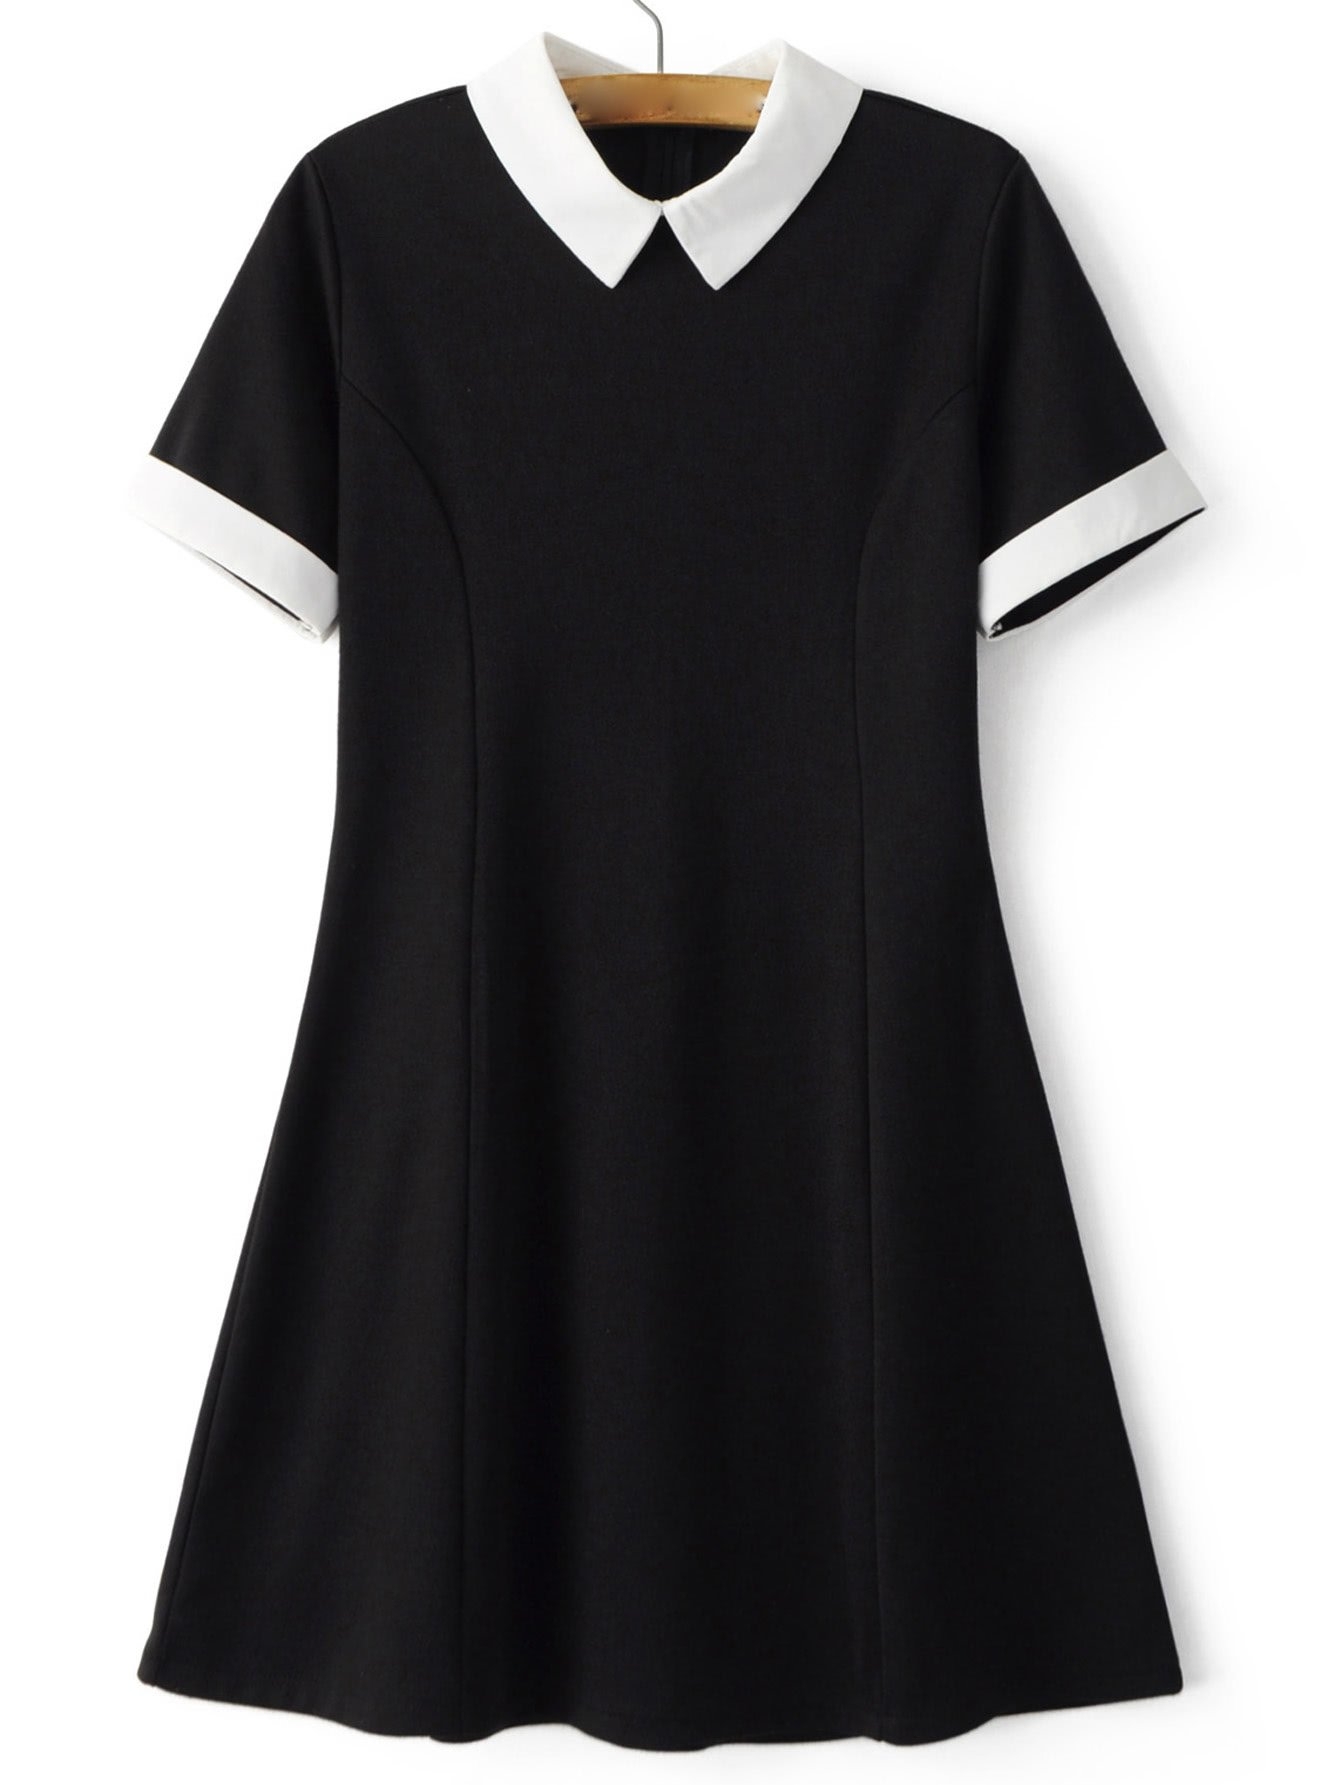 HALLHUBER платье чёрное с белым воротником